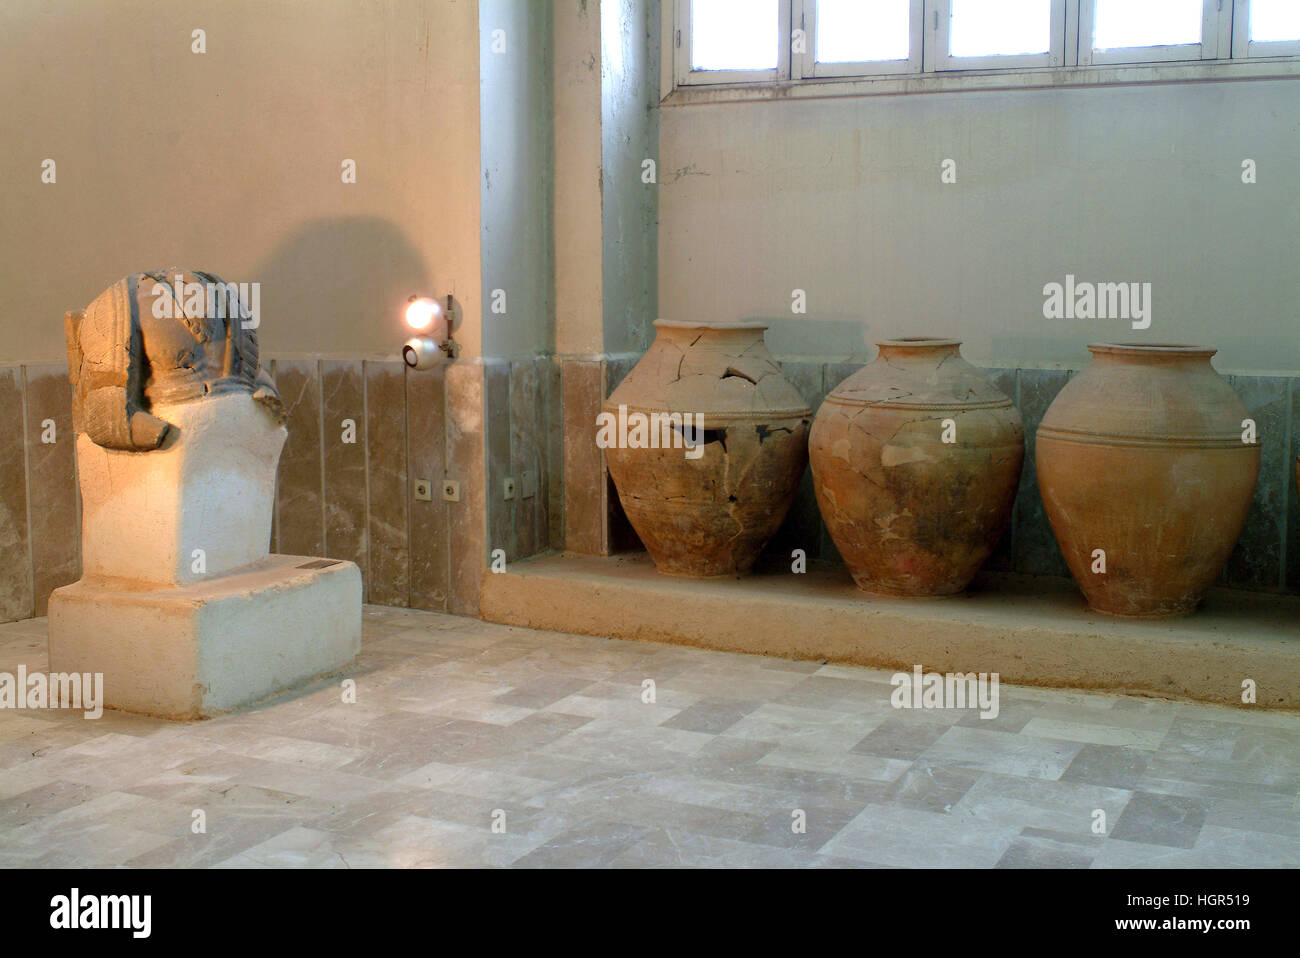 Siria Ebla sito archeologico Foto Stock